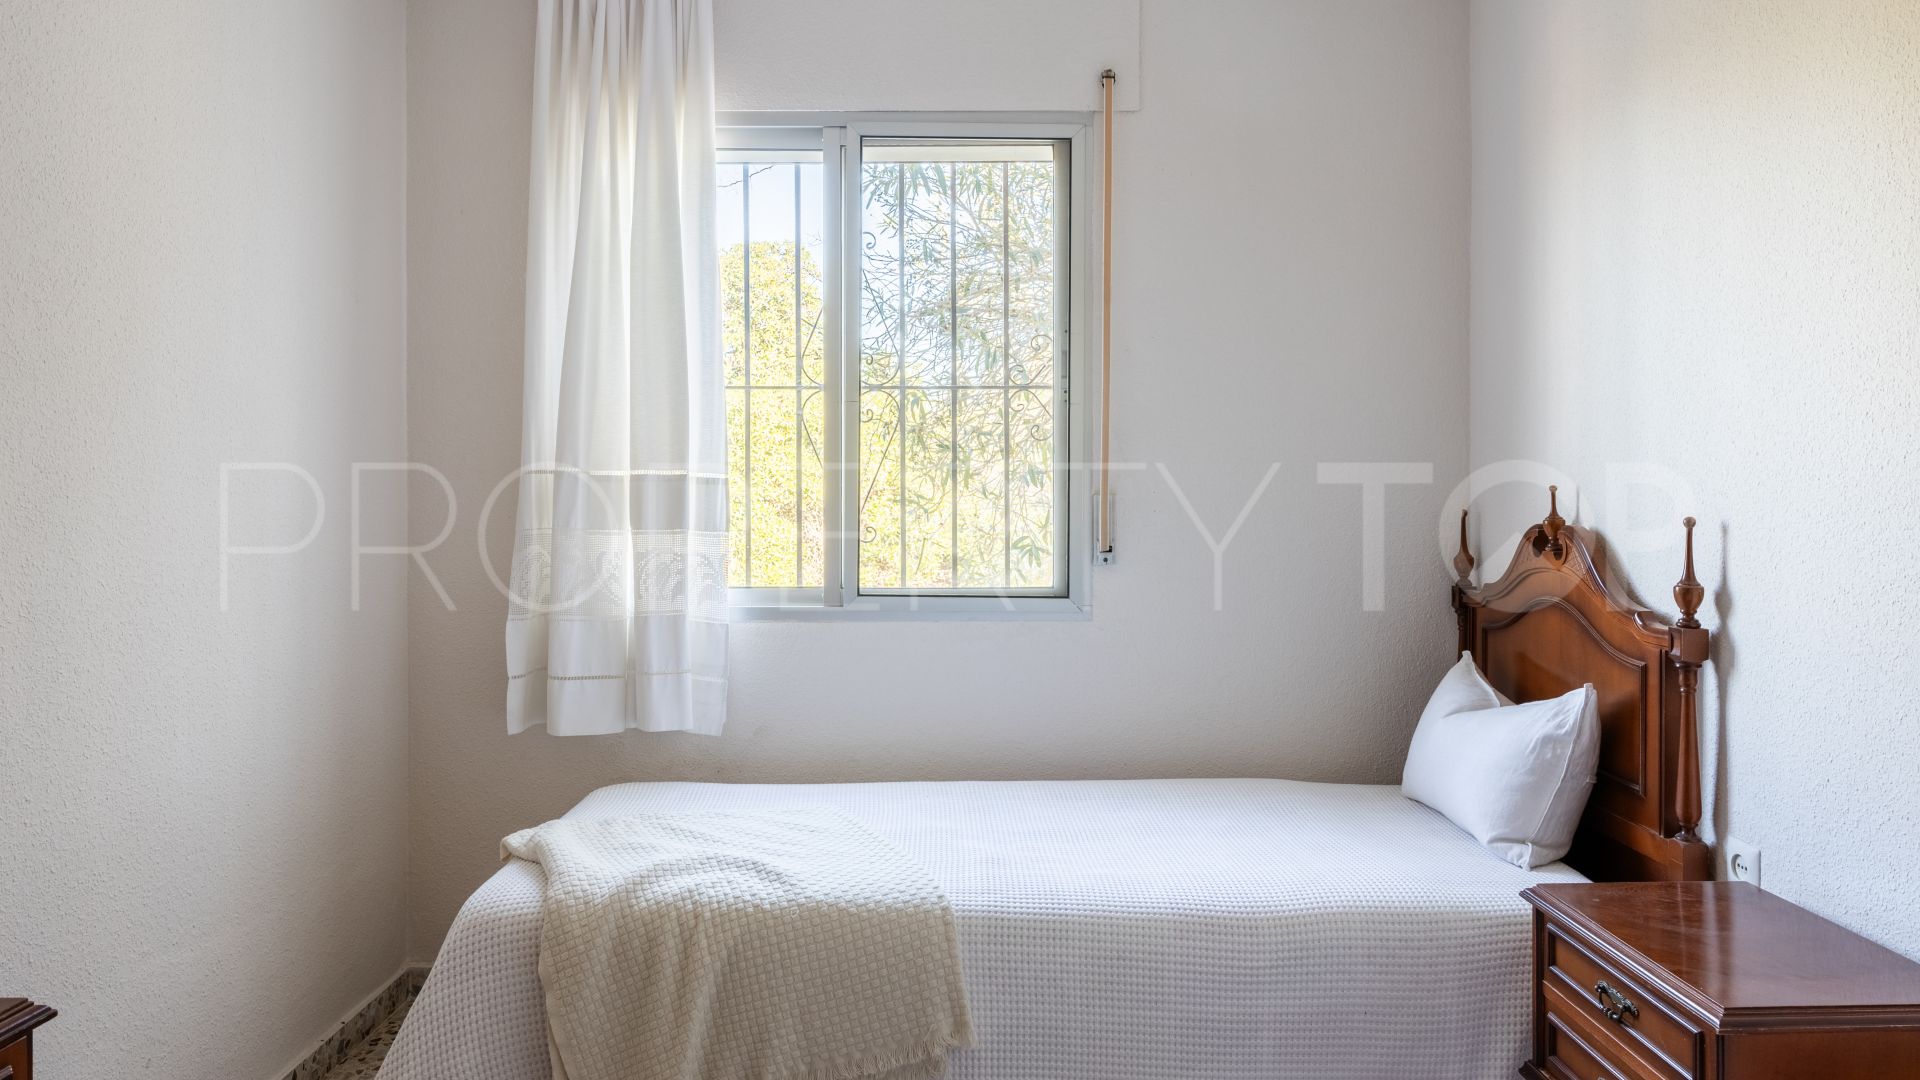 For sale 3 bedrooms finca in Alhaurin de la Torre